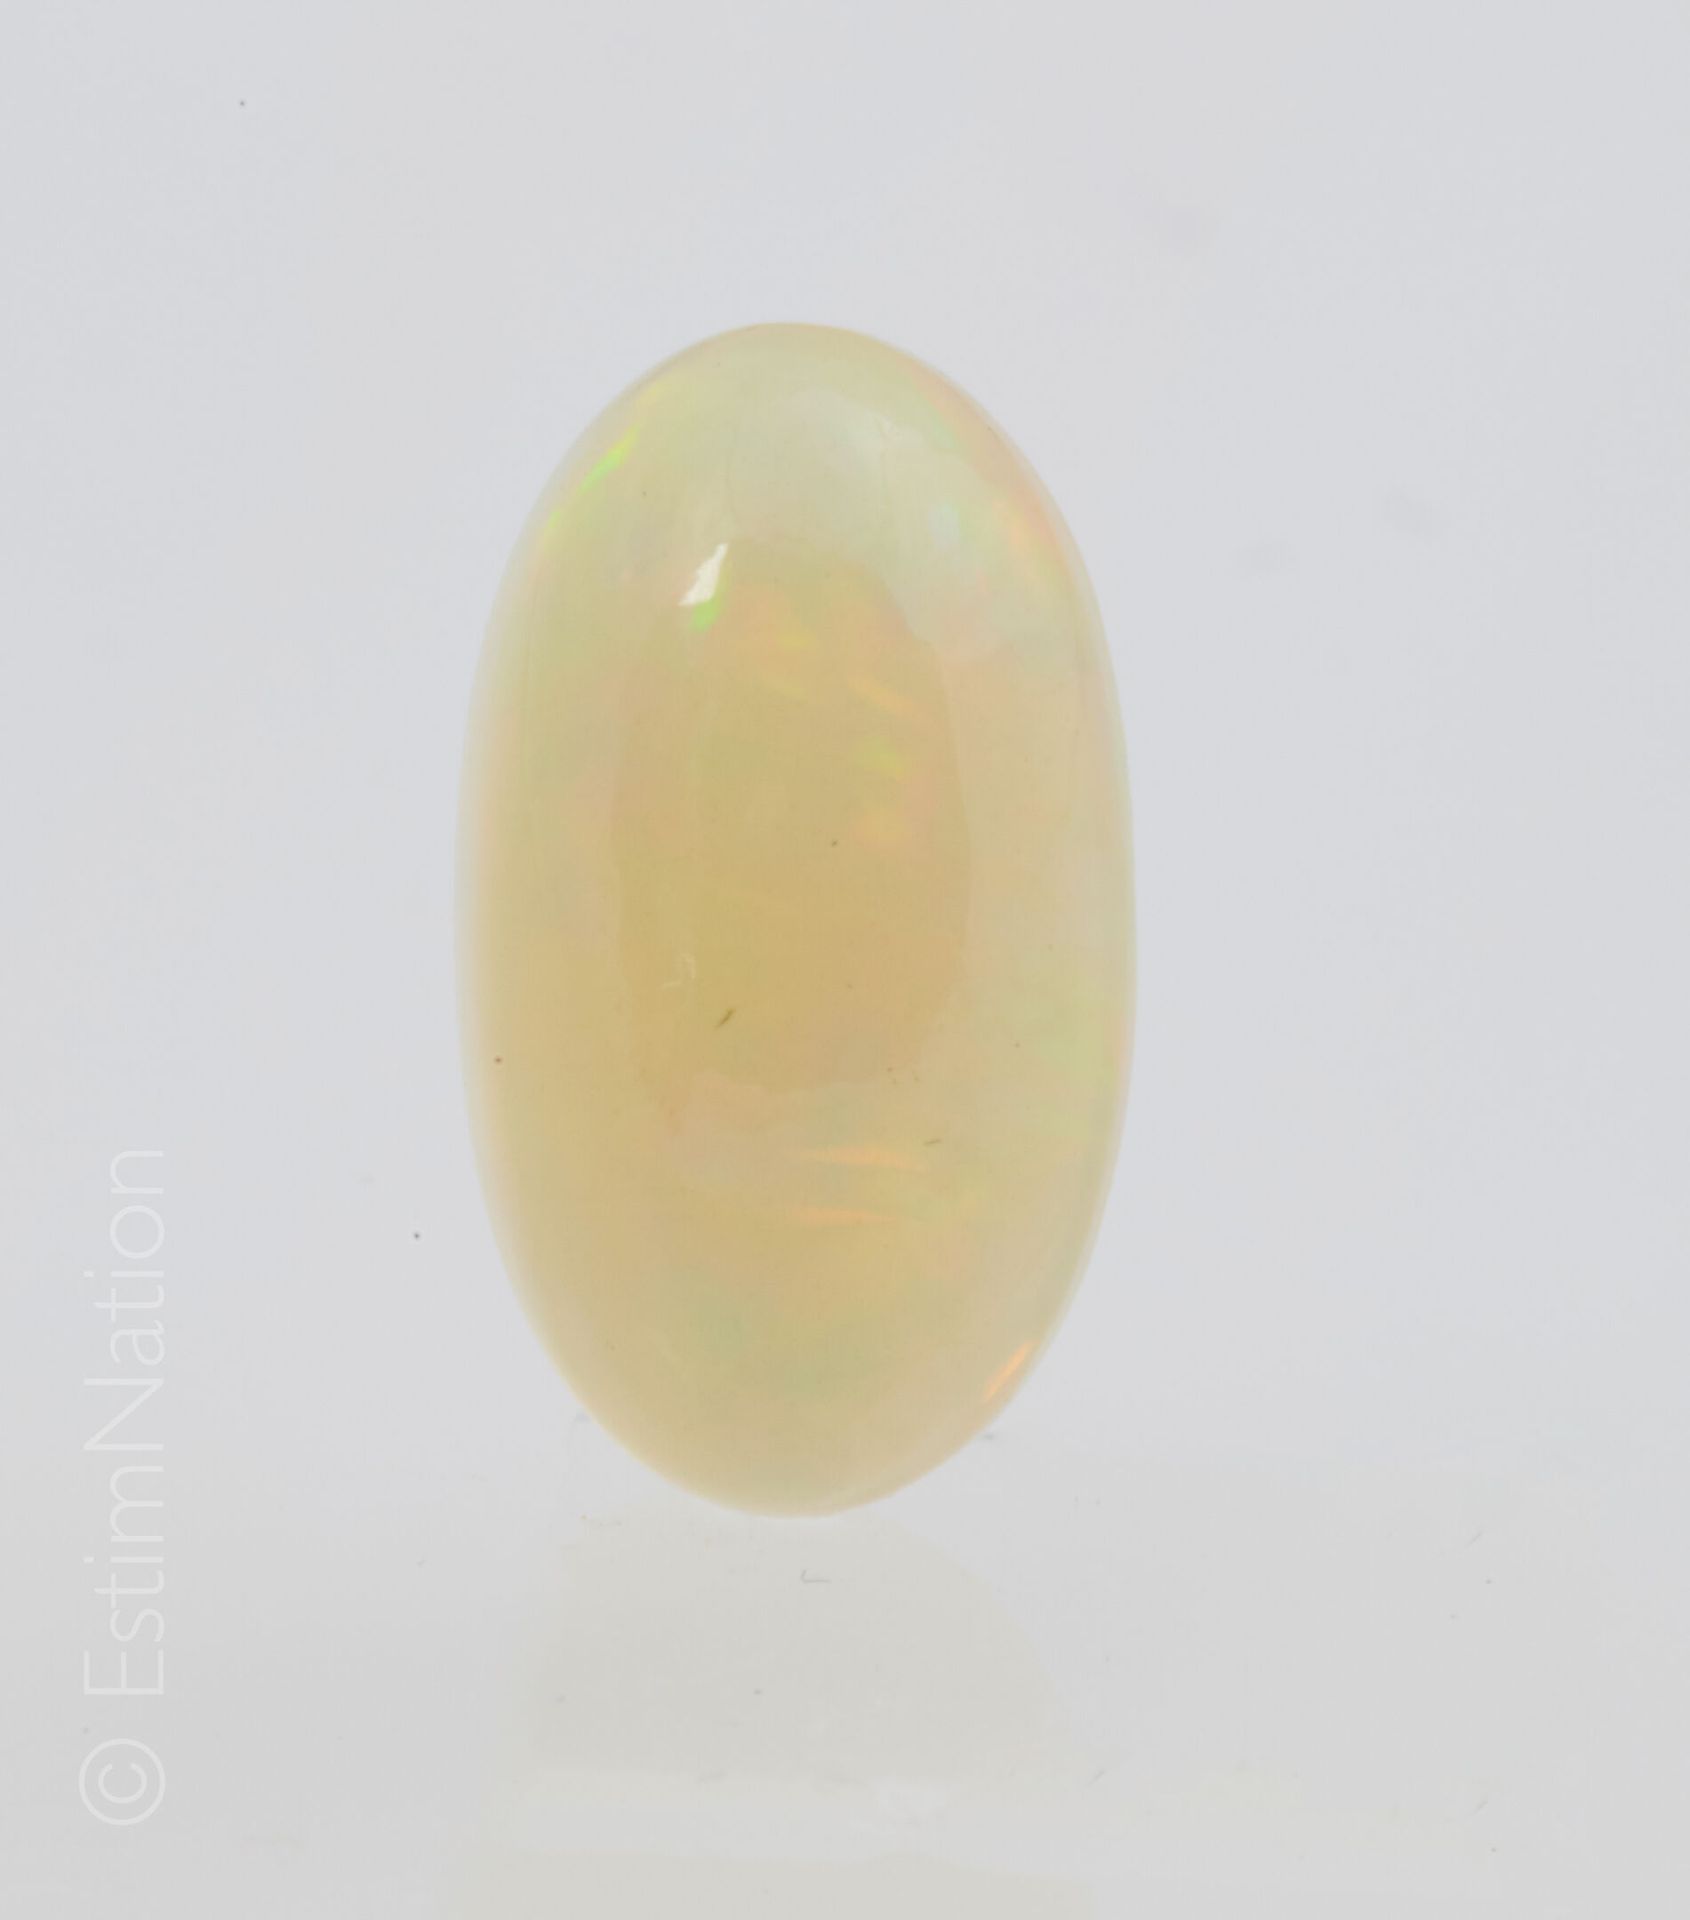 OPALE 威罗蛋白石，椭圆形凸圆形。原产地：埃塞俄比亚

尺寸：14.30 x 8.50 x 6.90毫米左右